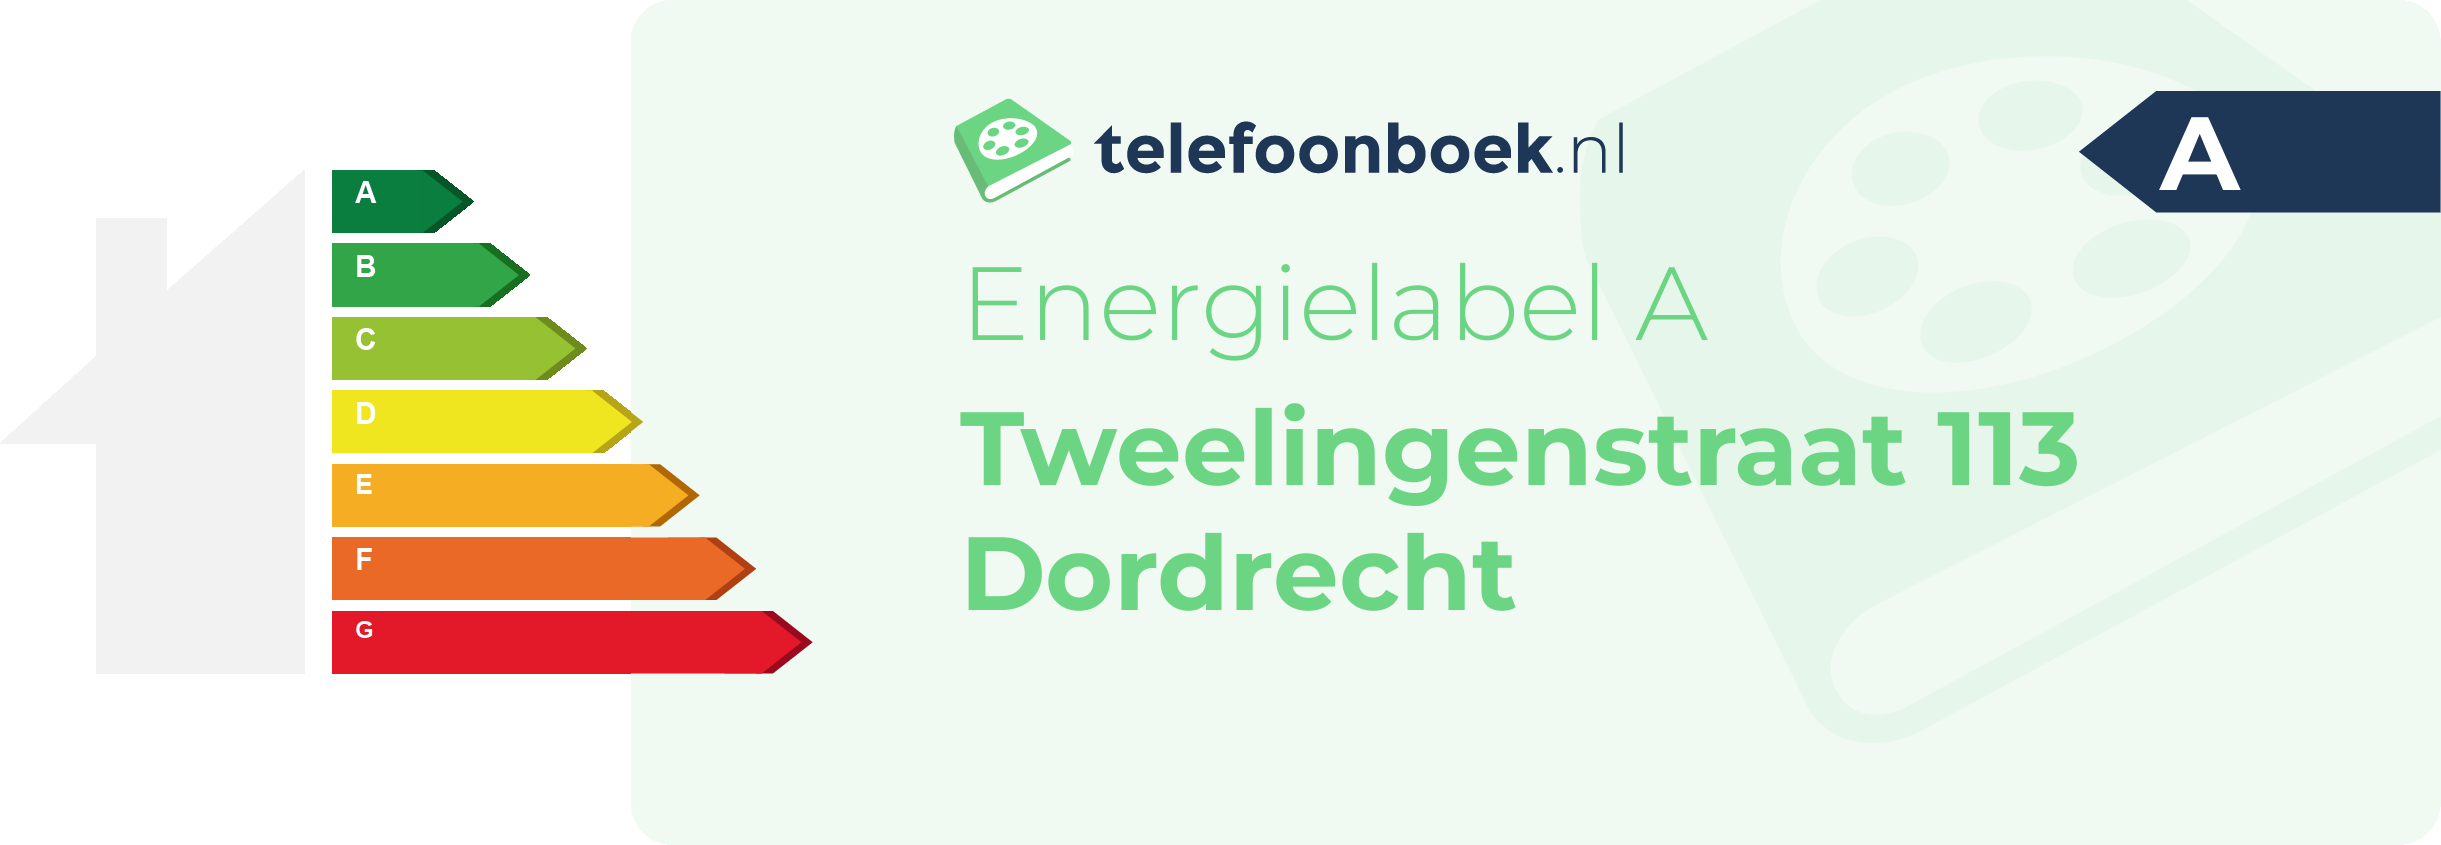 Energielabel Tweelingenstraat 113 Dordrecht